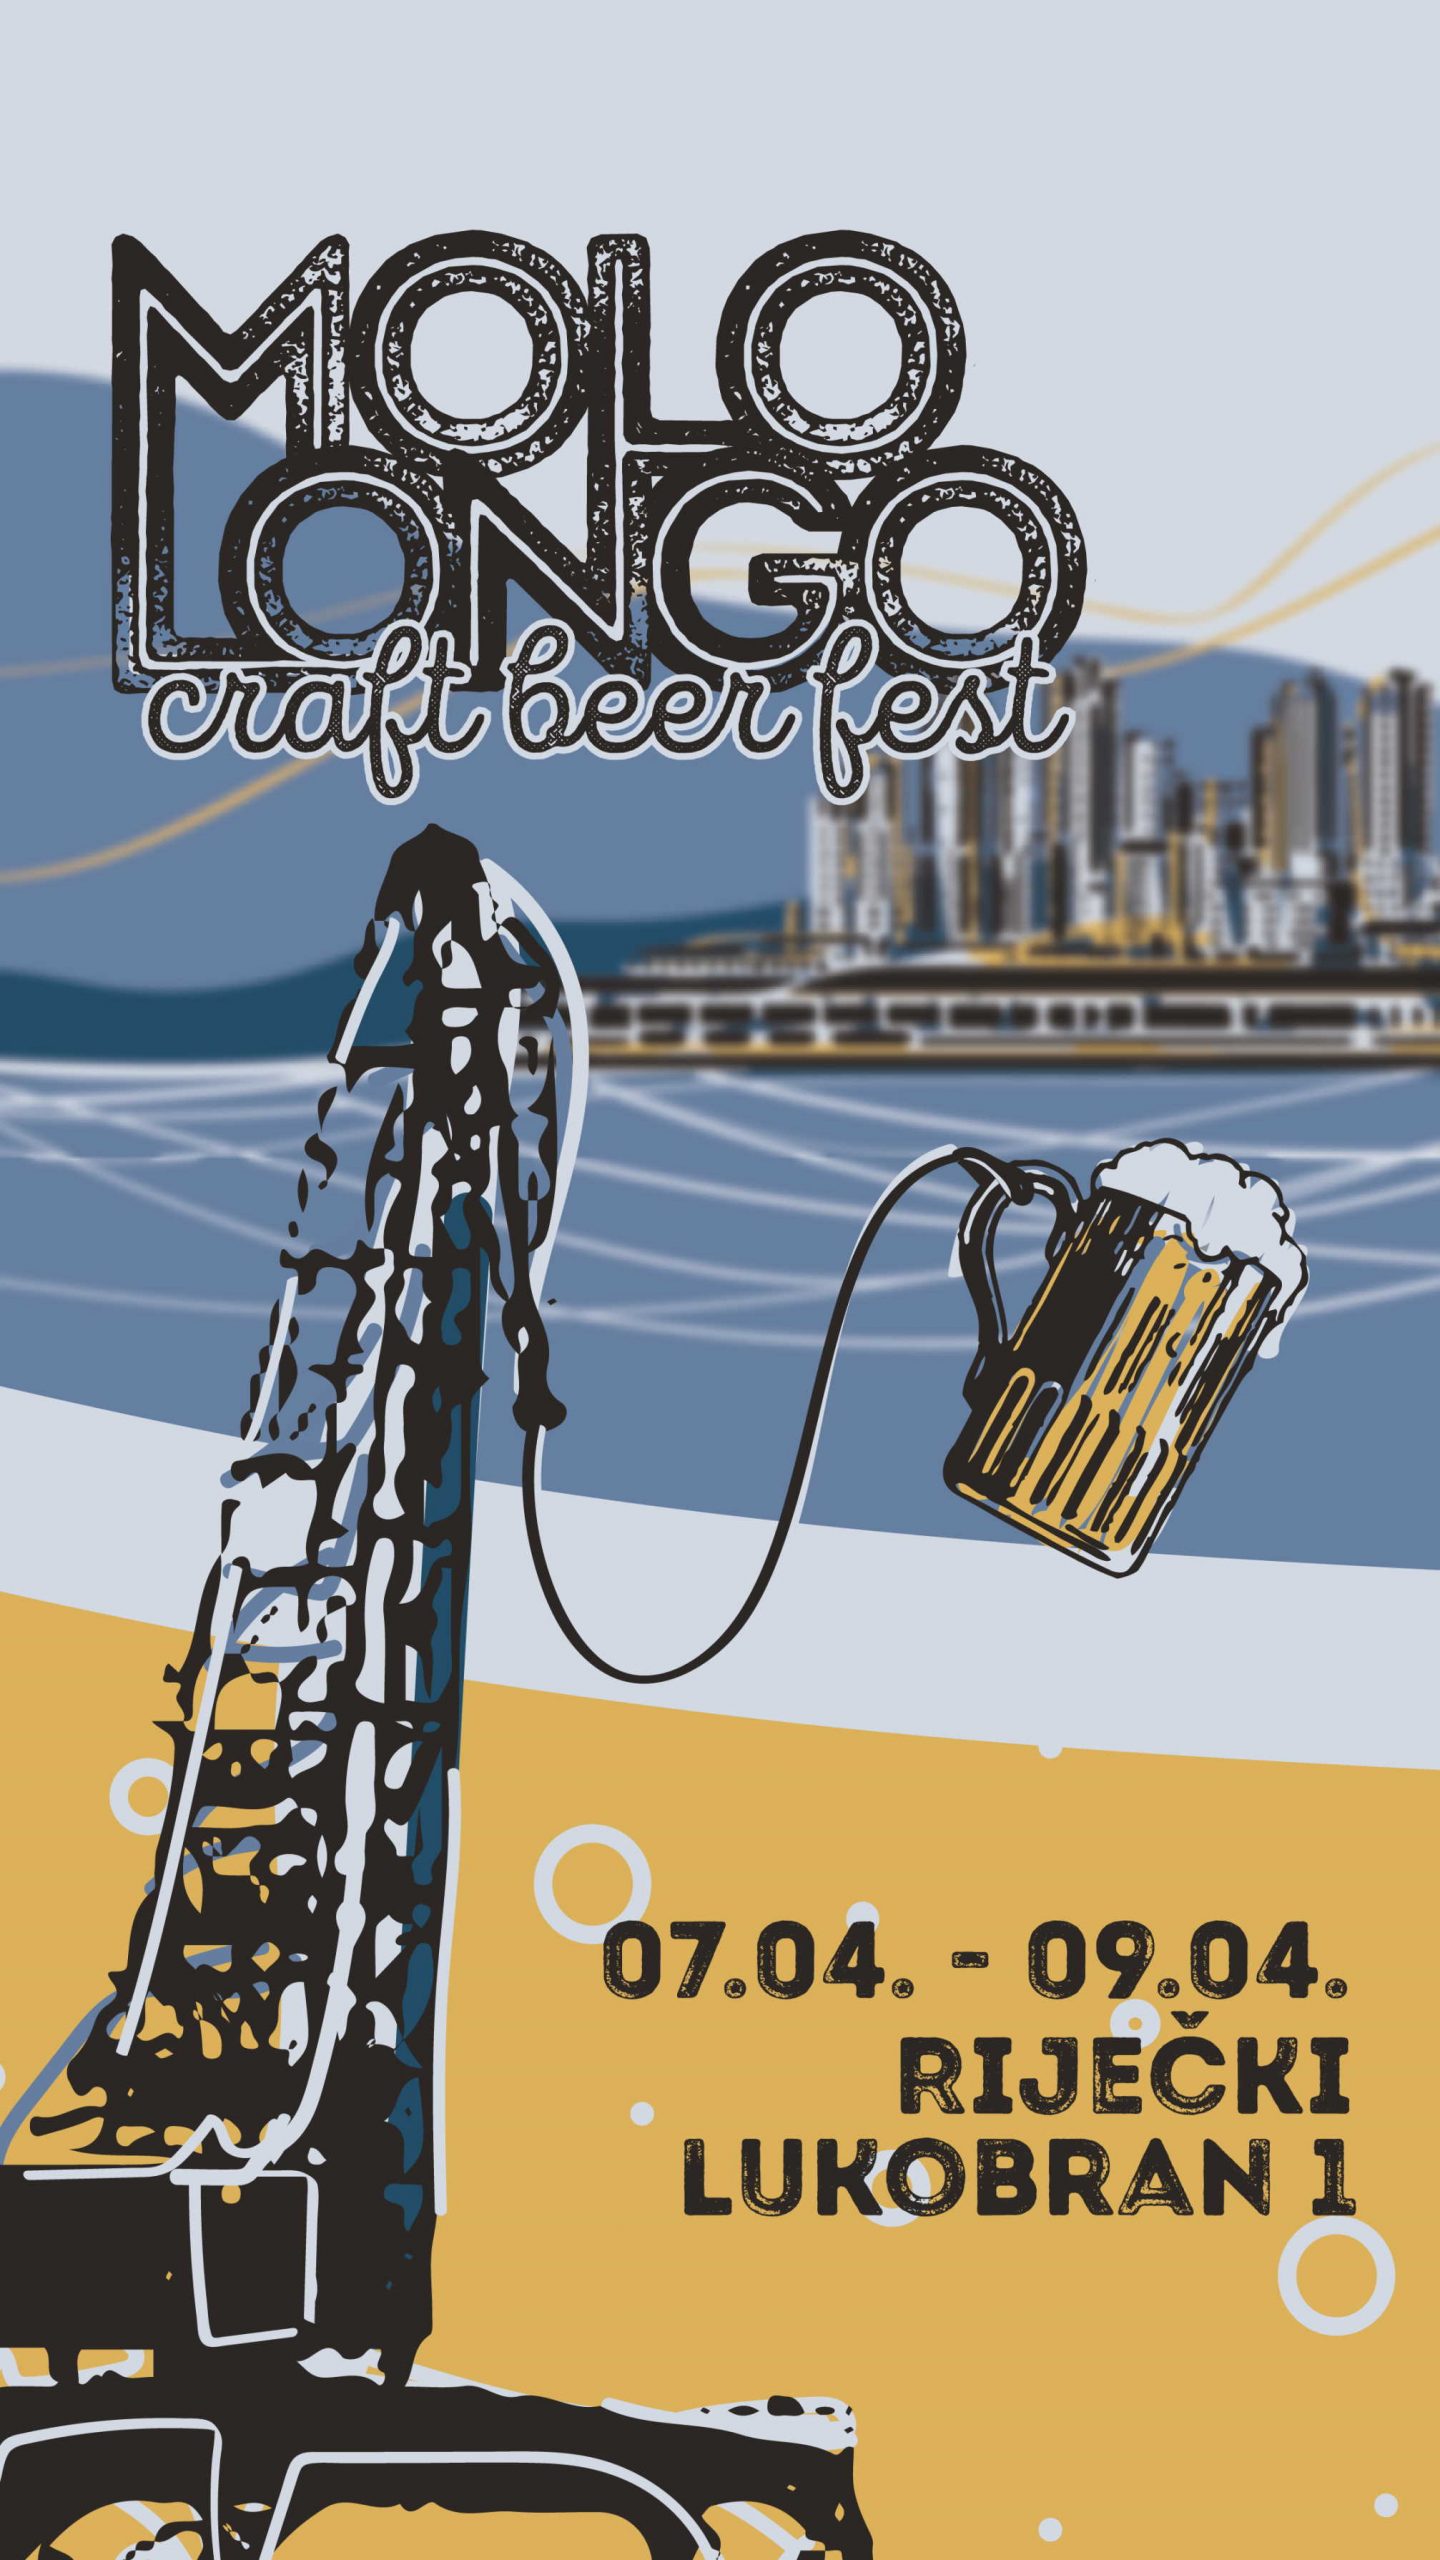 Ženske snage donose prvi festival kvarnerskog craft piva u Rijeku: Molo Longo Craft Beer Fest!